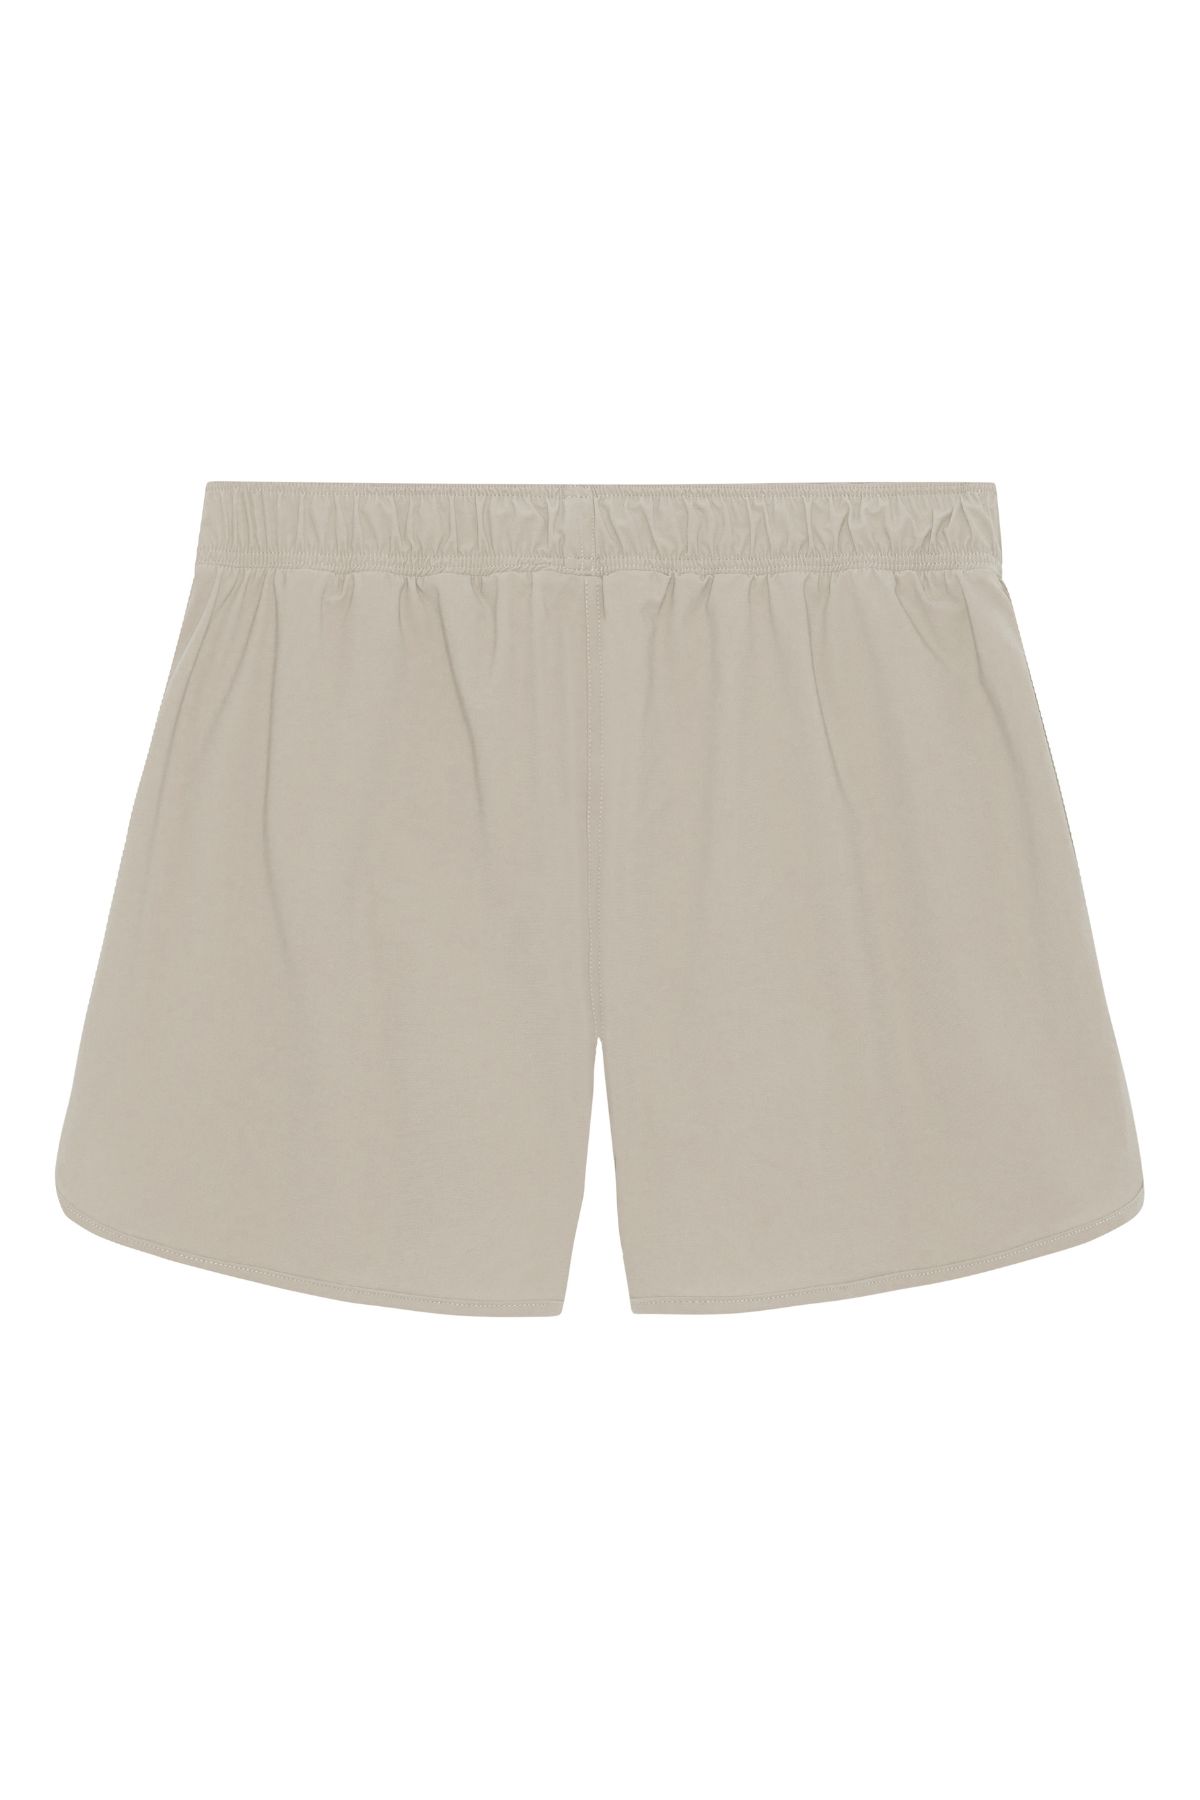 Balian herre shorts - Sand